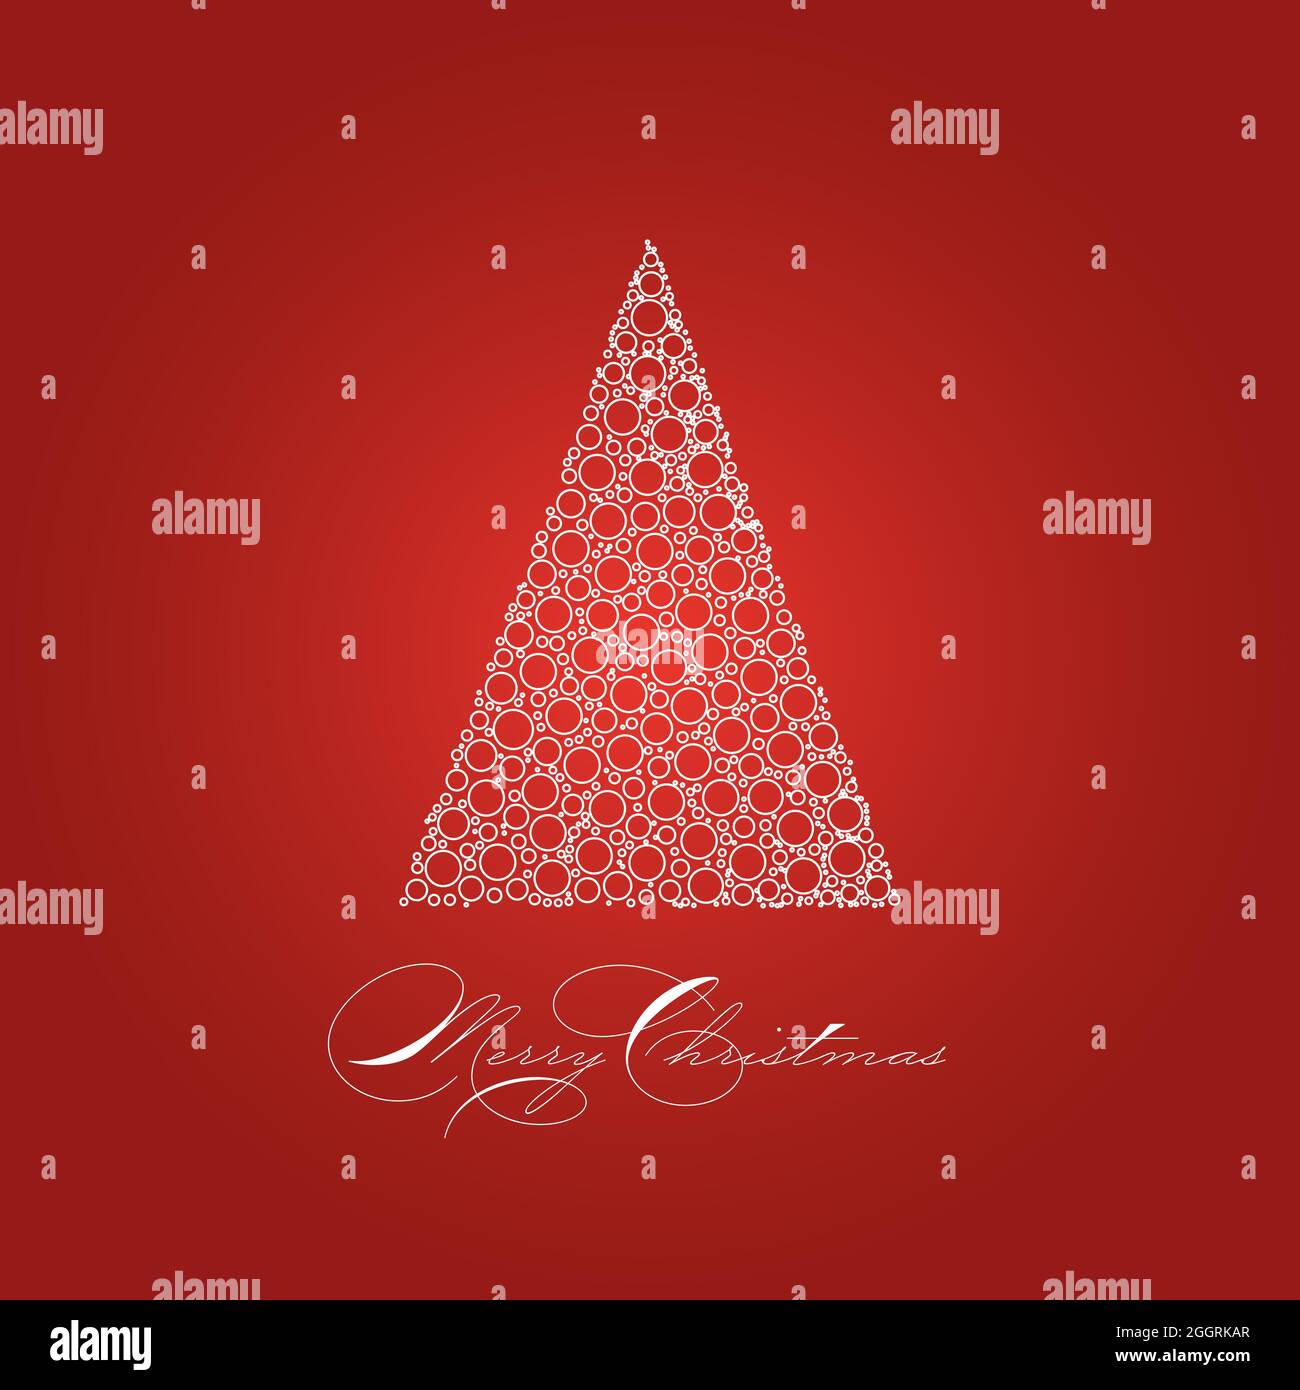 Weihnachtskarte Thema mit gepunkteten schneeweißen Weihnachtsbaum auf rotem Hintergrund und Label Merry Christmas. Einfache elegante und moderne Vectrior Illustration. Stock Vektor